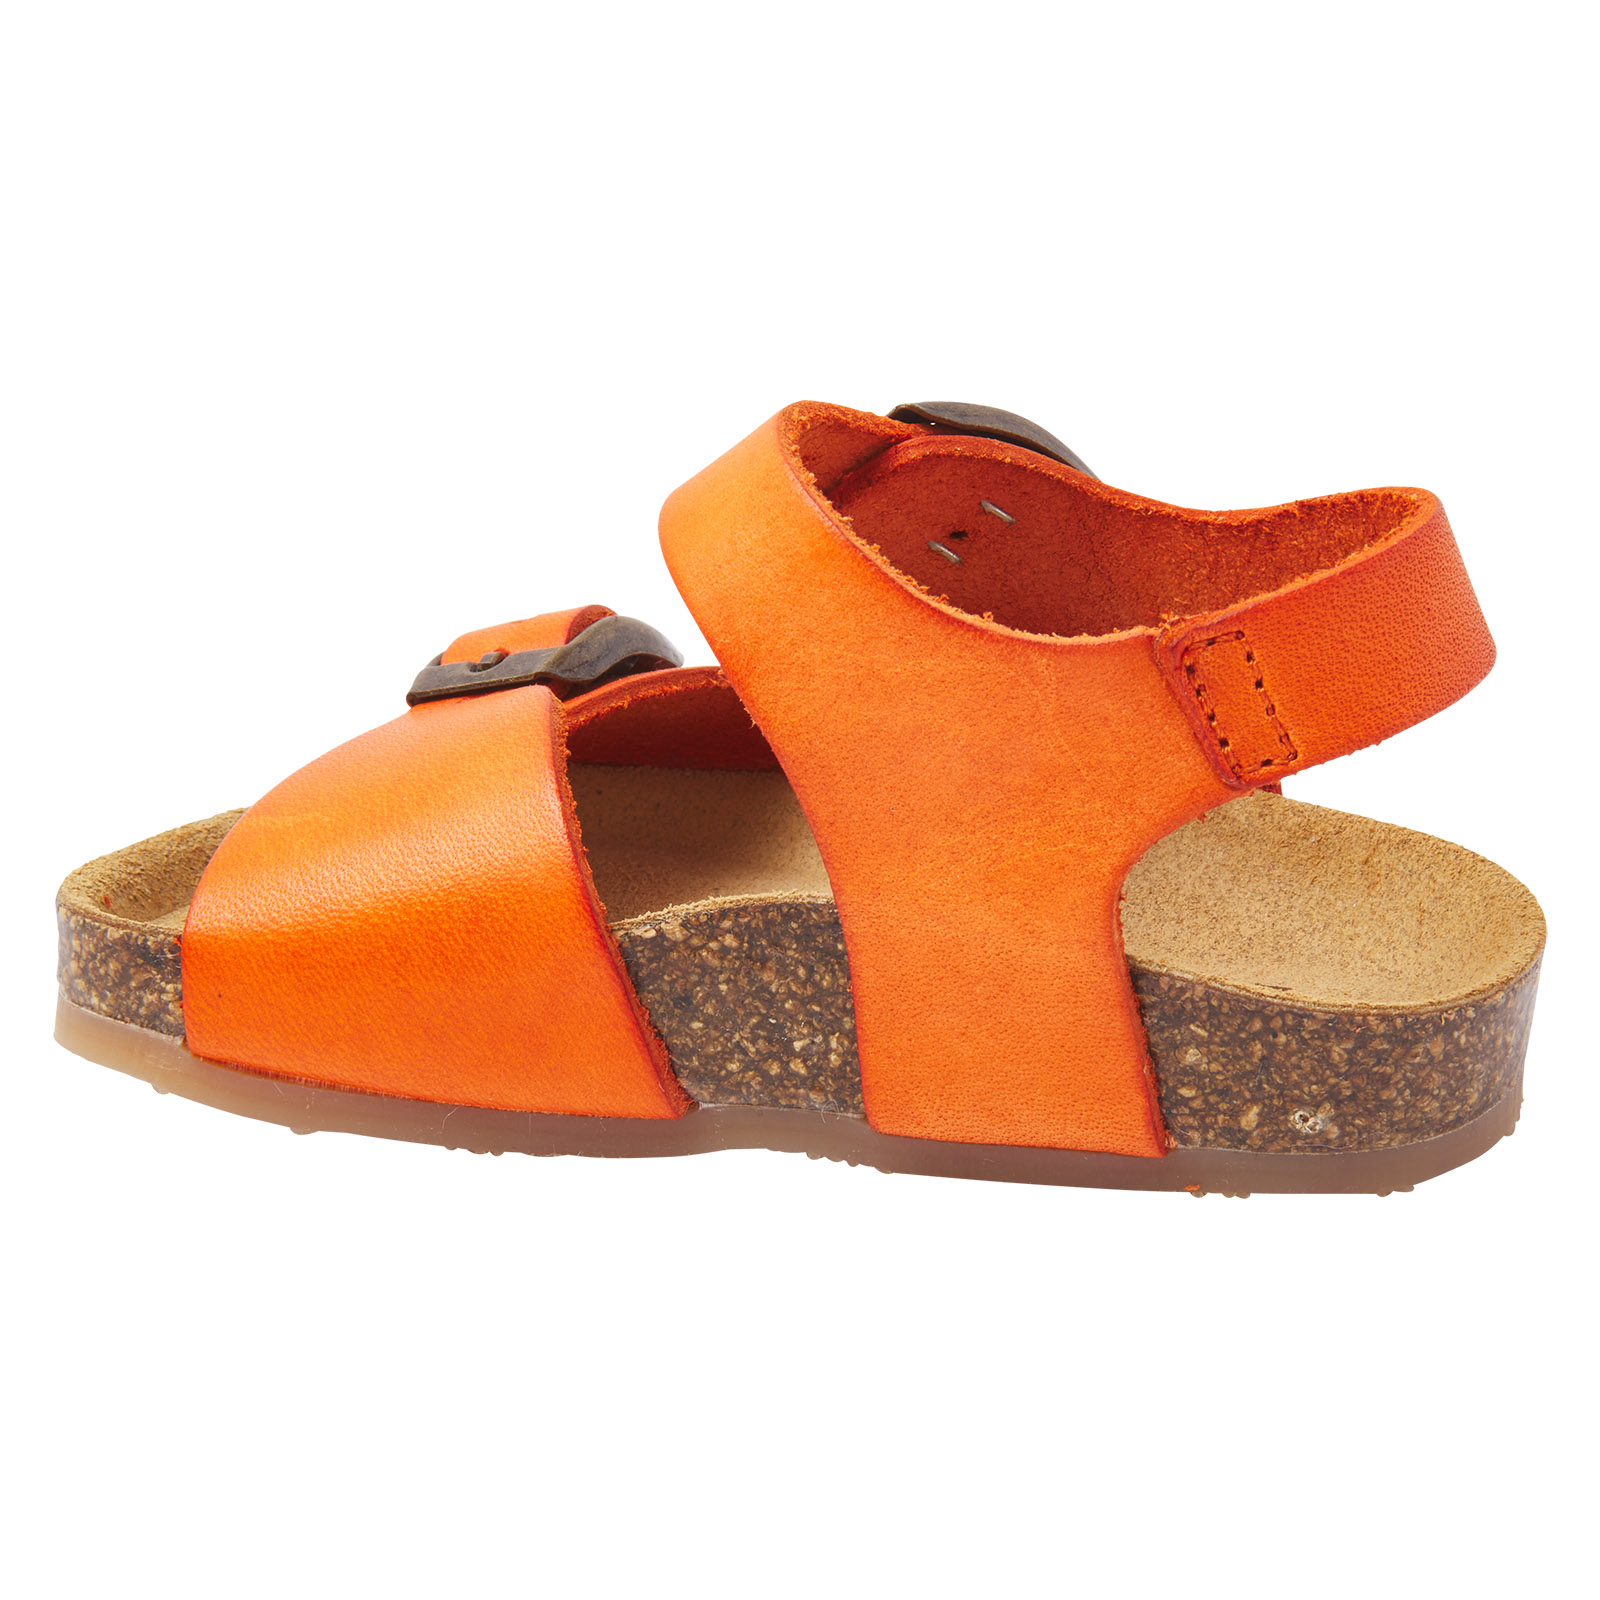 Oranje leren sandalen voor jongens met gespsluiting, Kipling